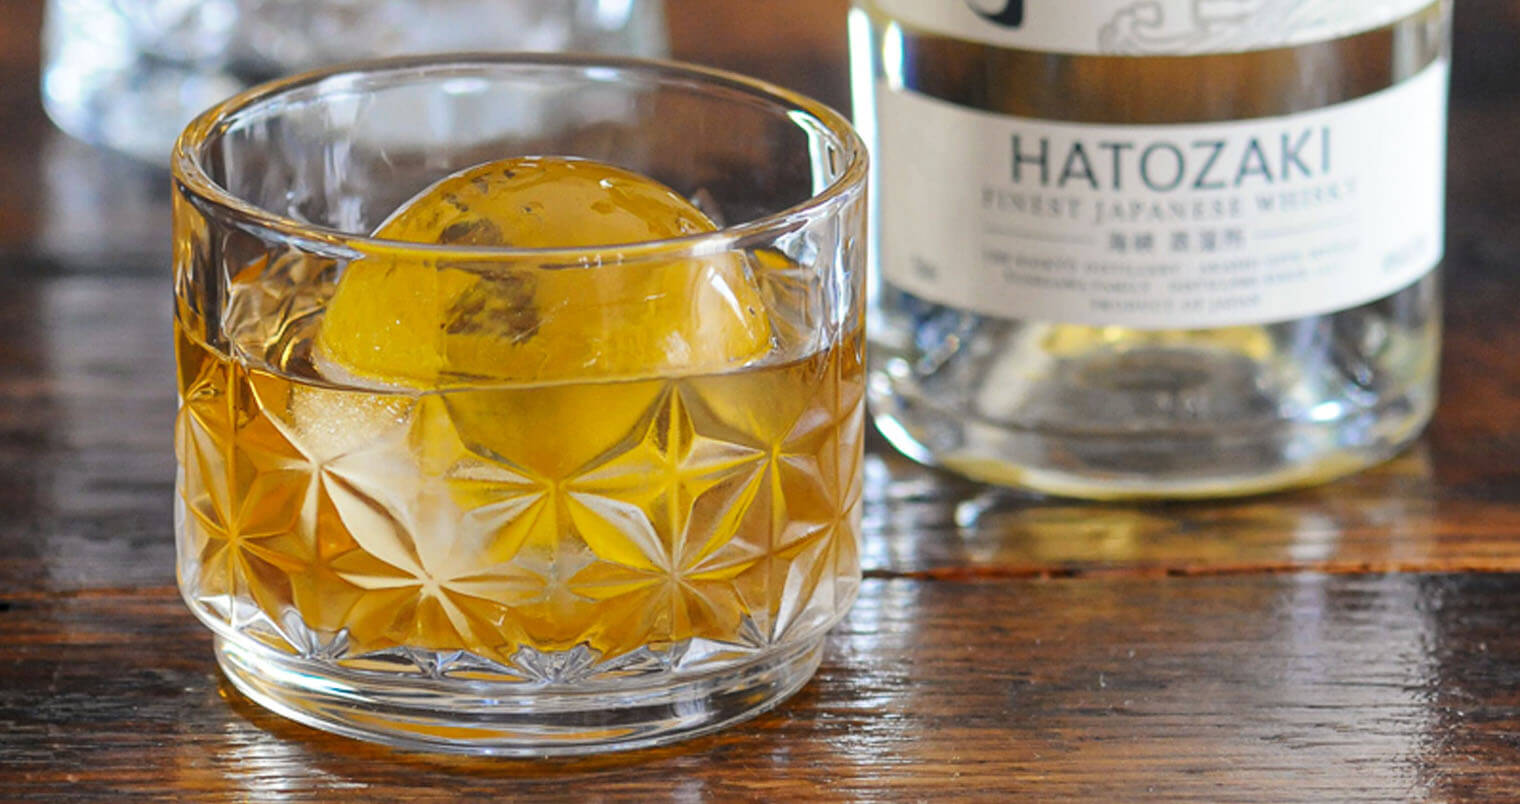 Hatozaki Finest Japanese Whisky World Traveler Old Fashioned featured image